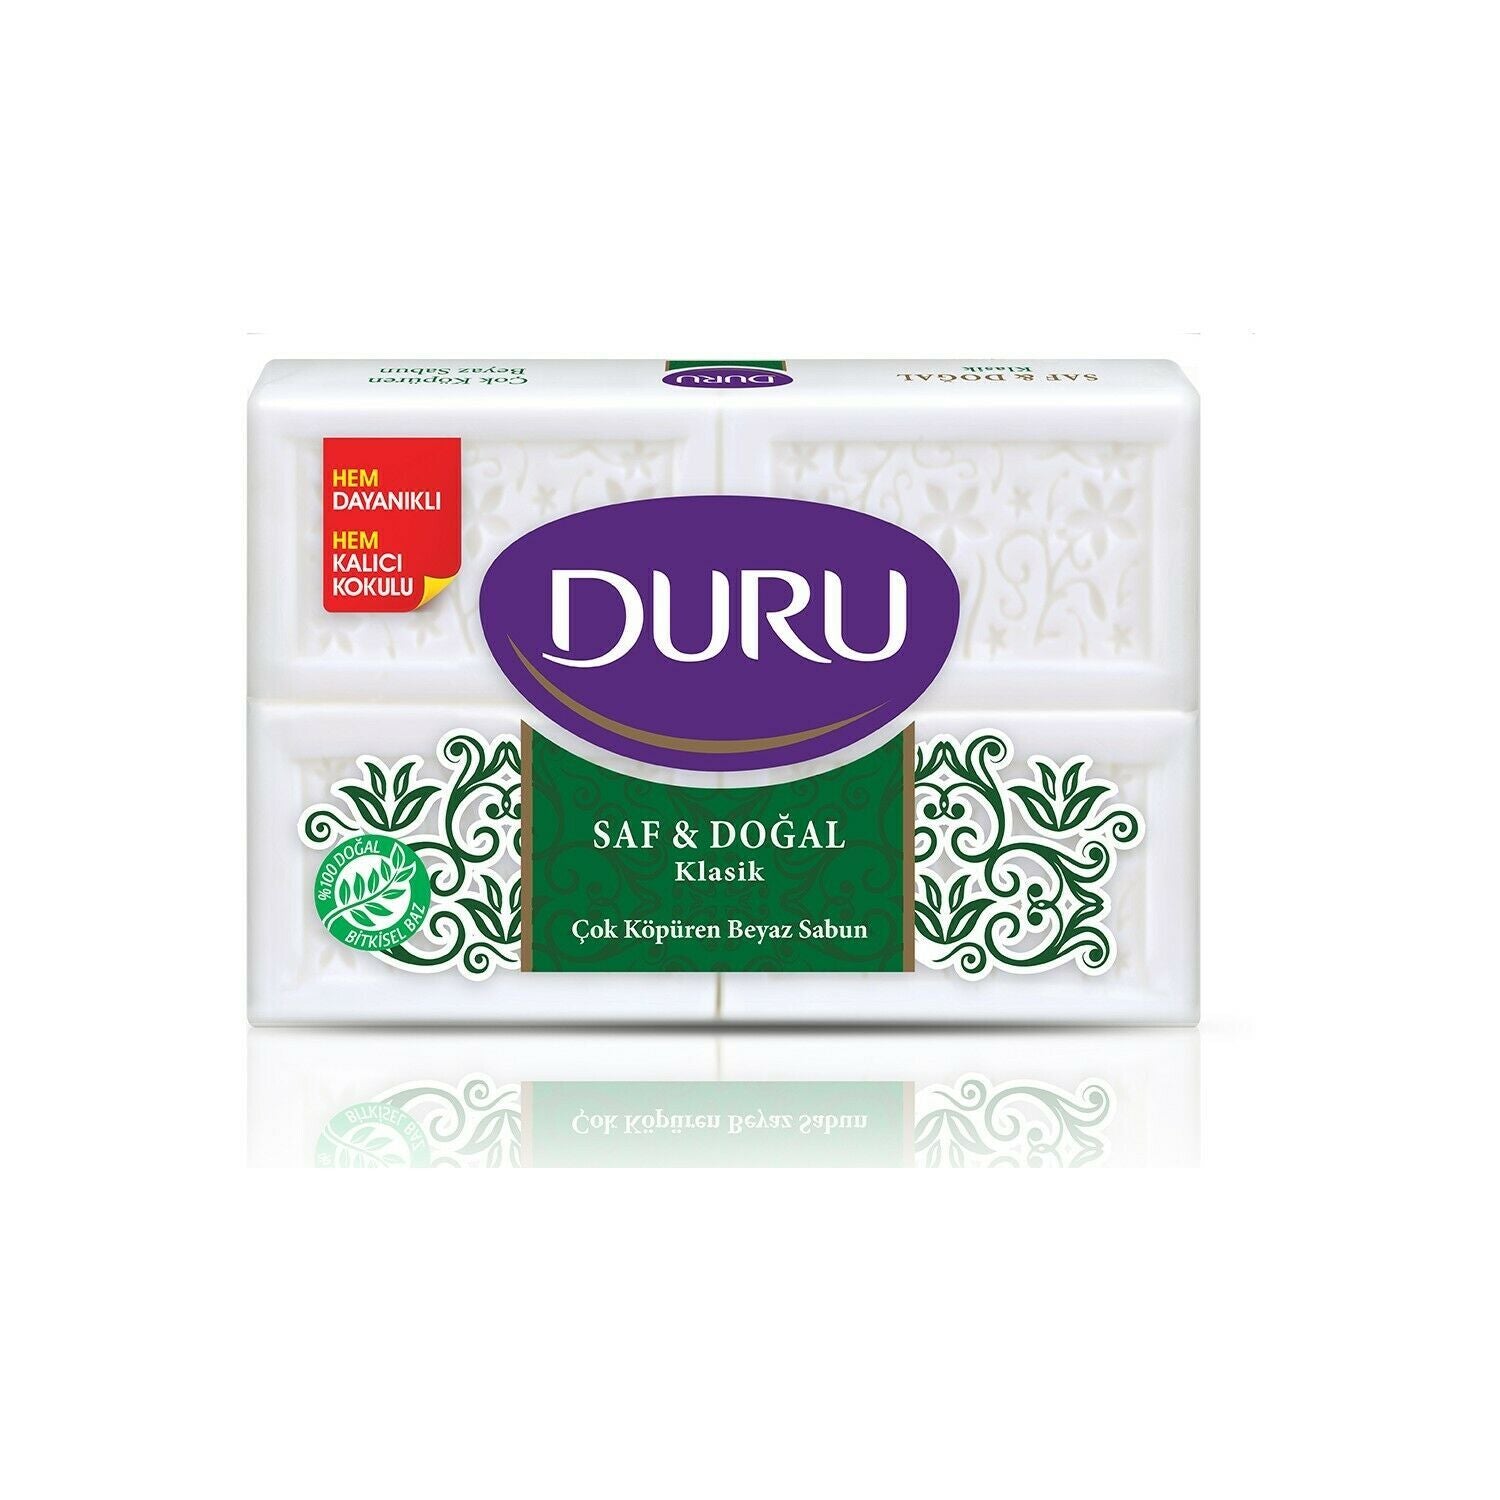 Duru Pure&Natural Classic Soap 150gx4